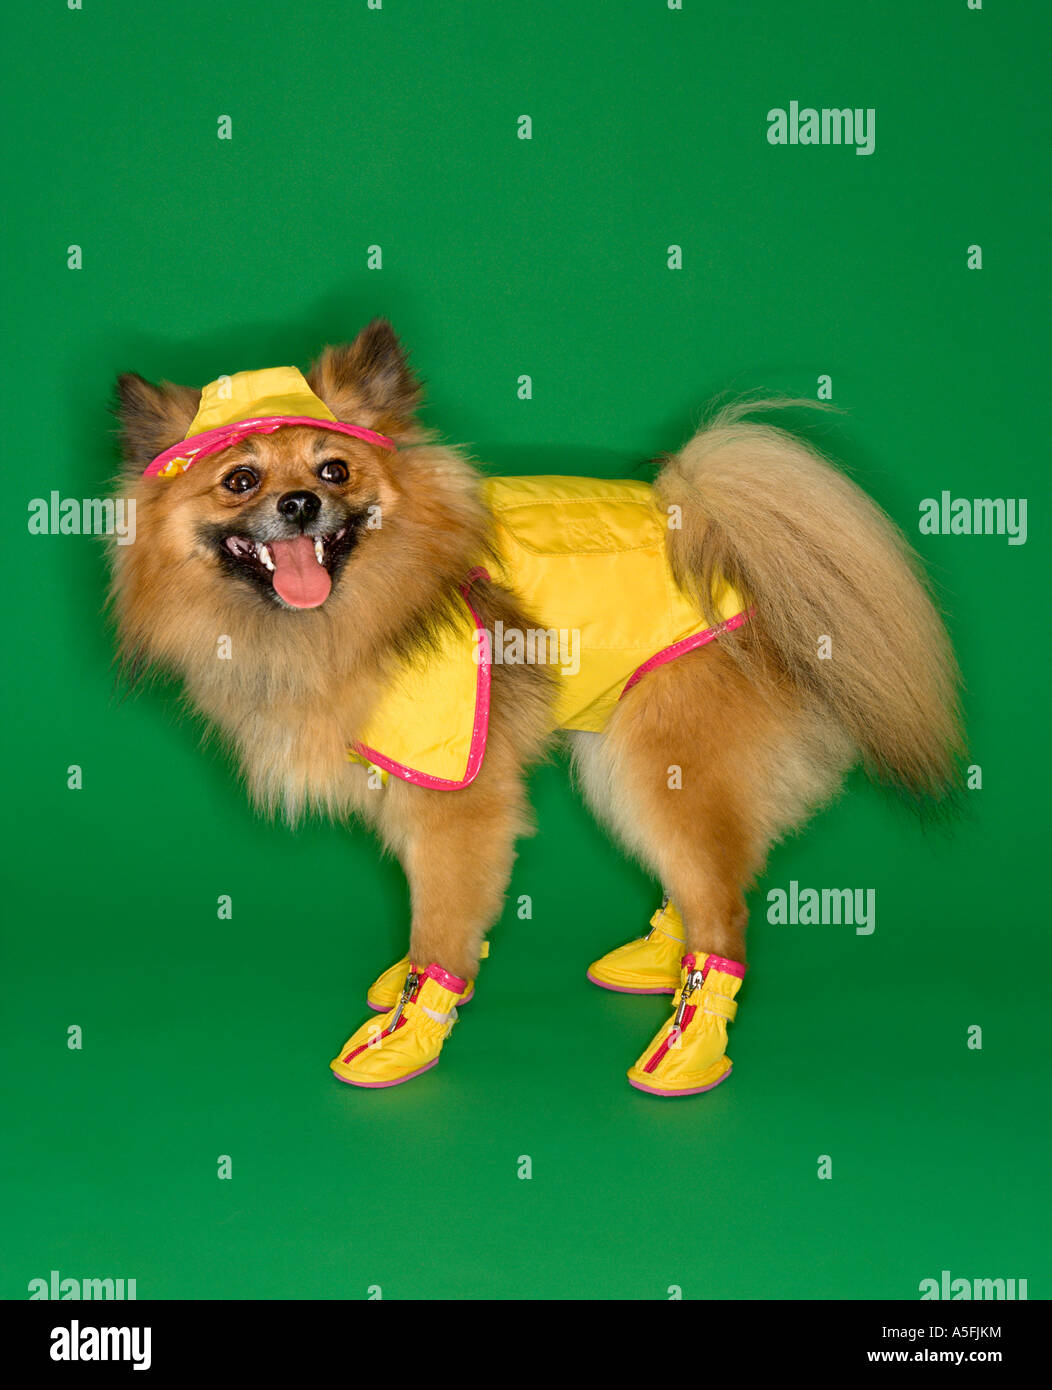 Brown Pomeranian dog wearing rain gear Stock Photo